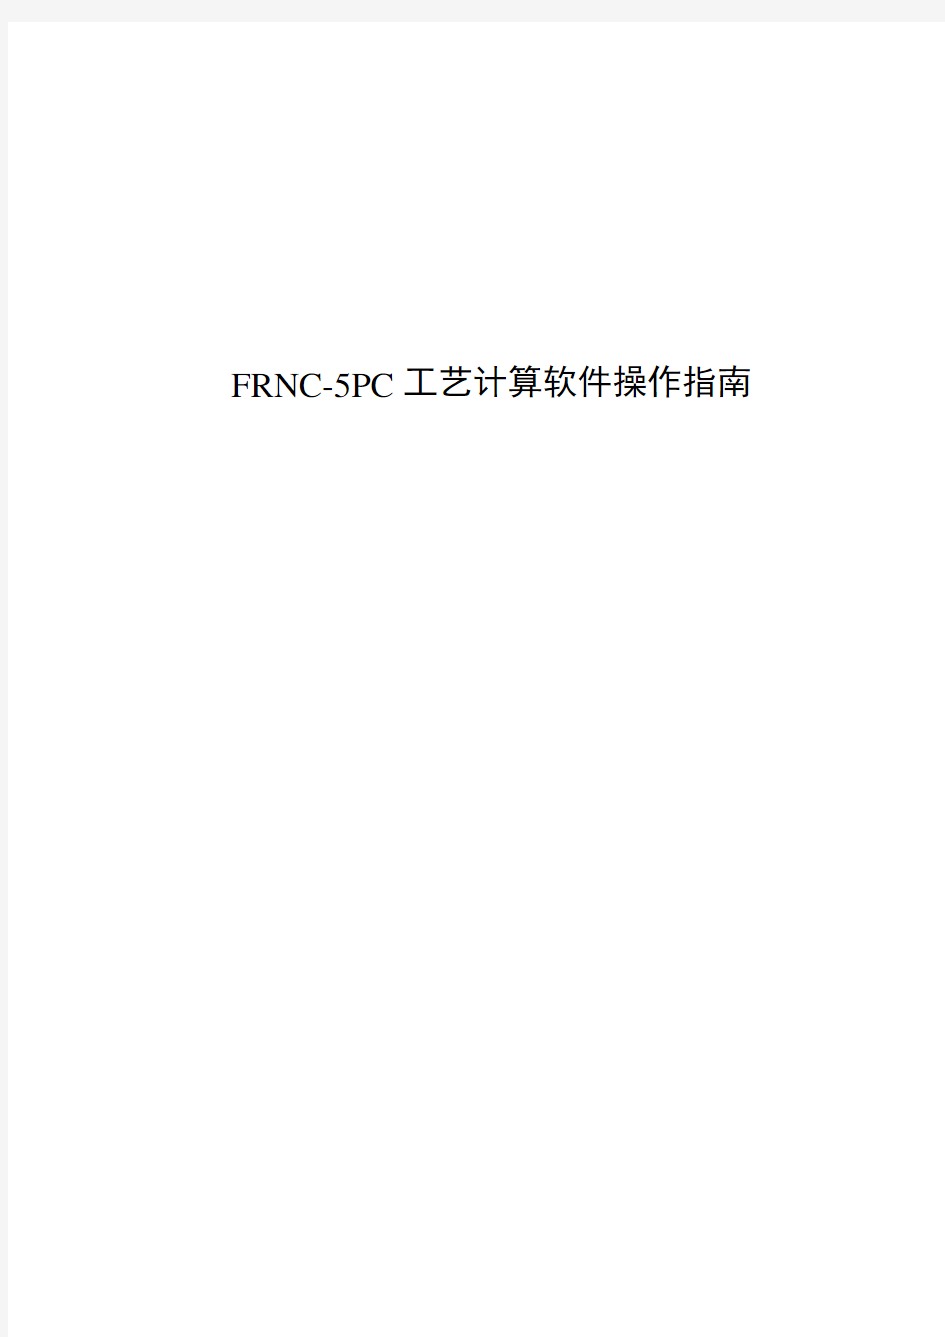 FRNC-5PC工艺计算软件中文操作指南